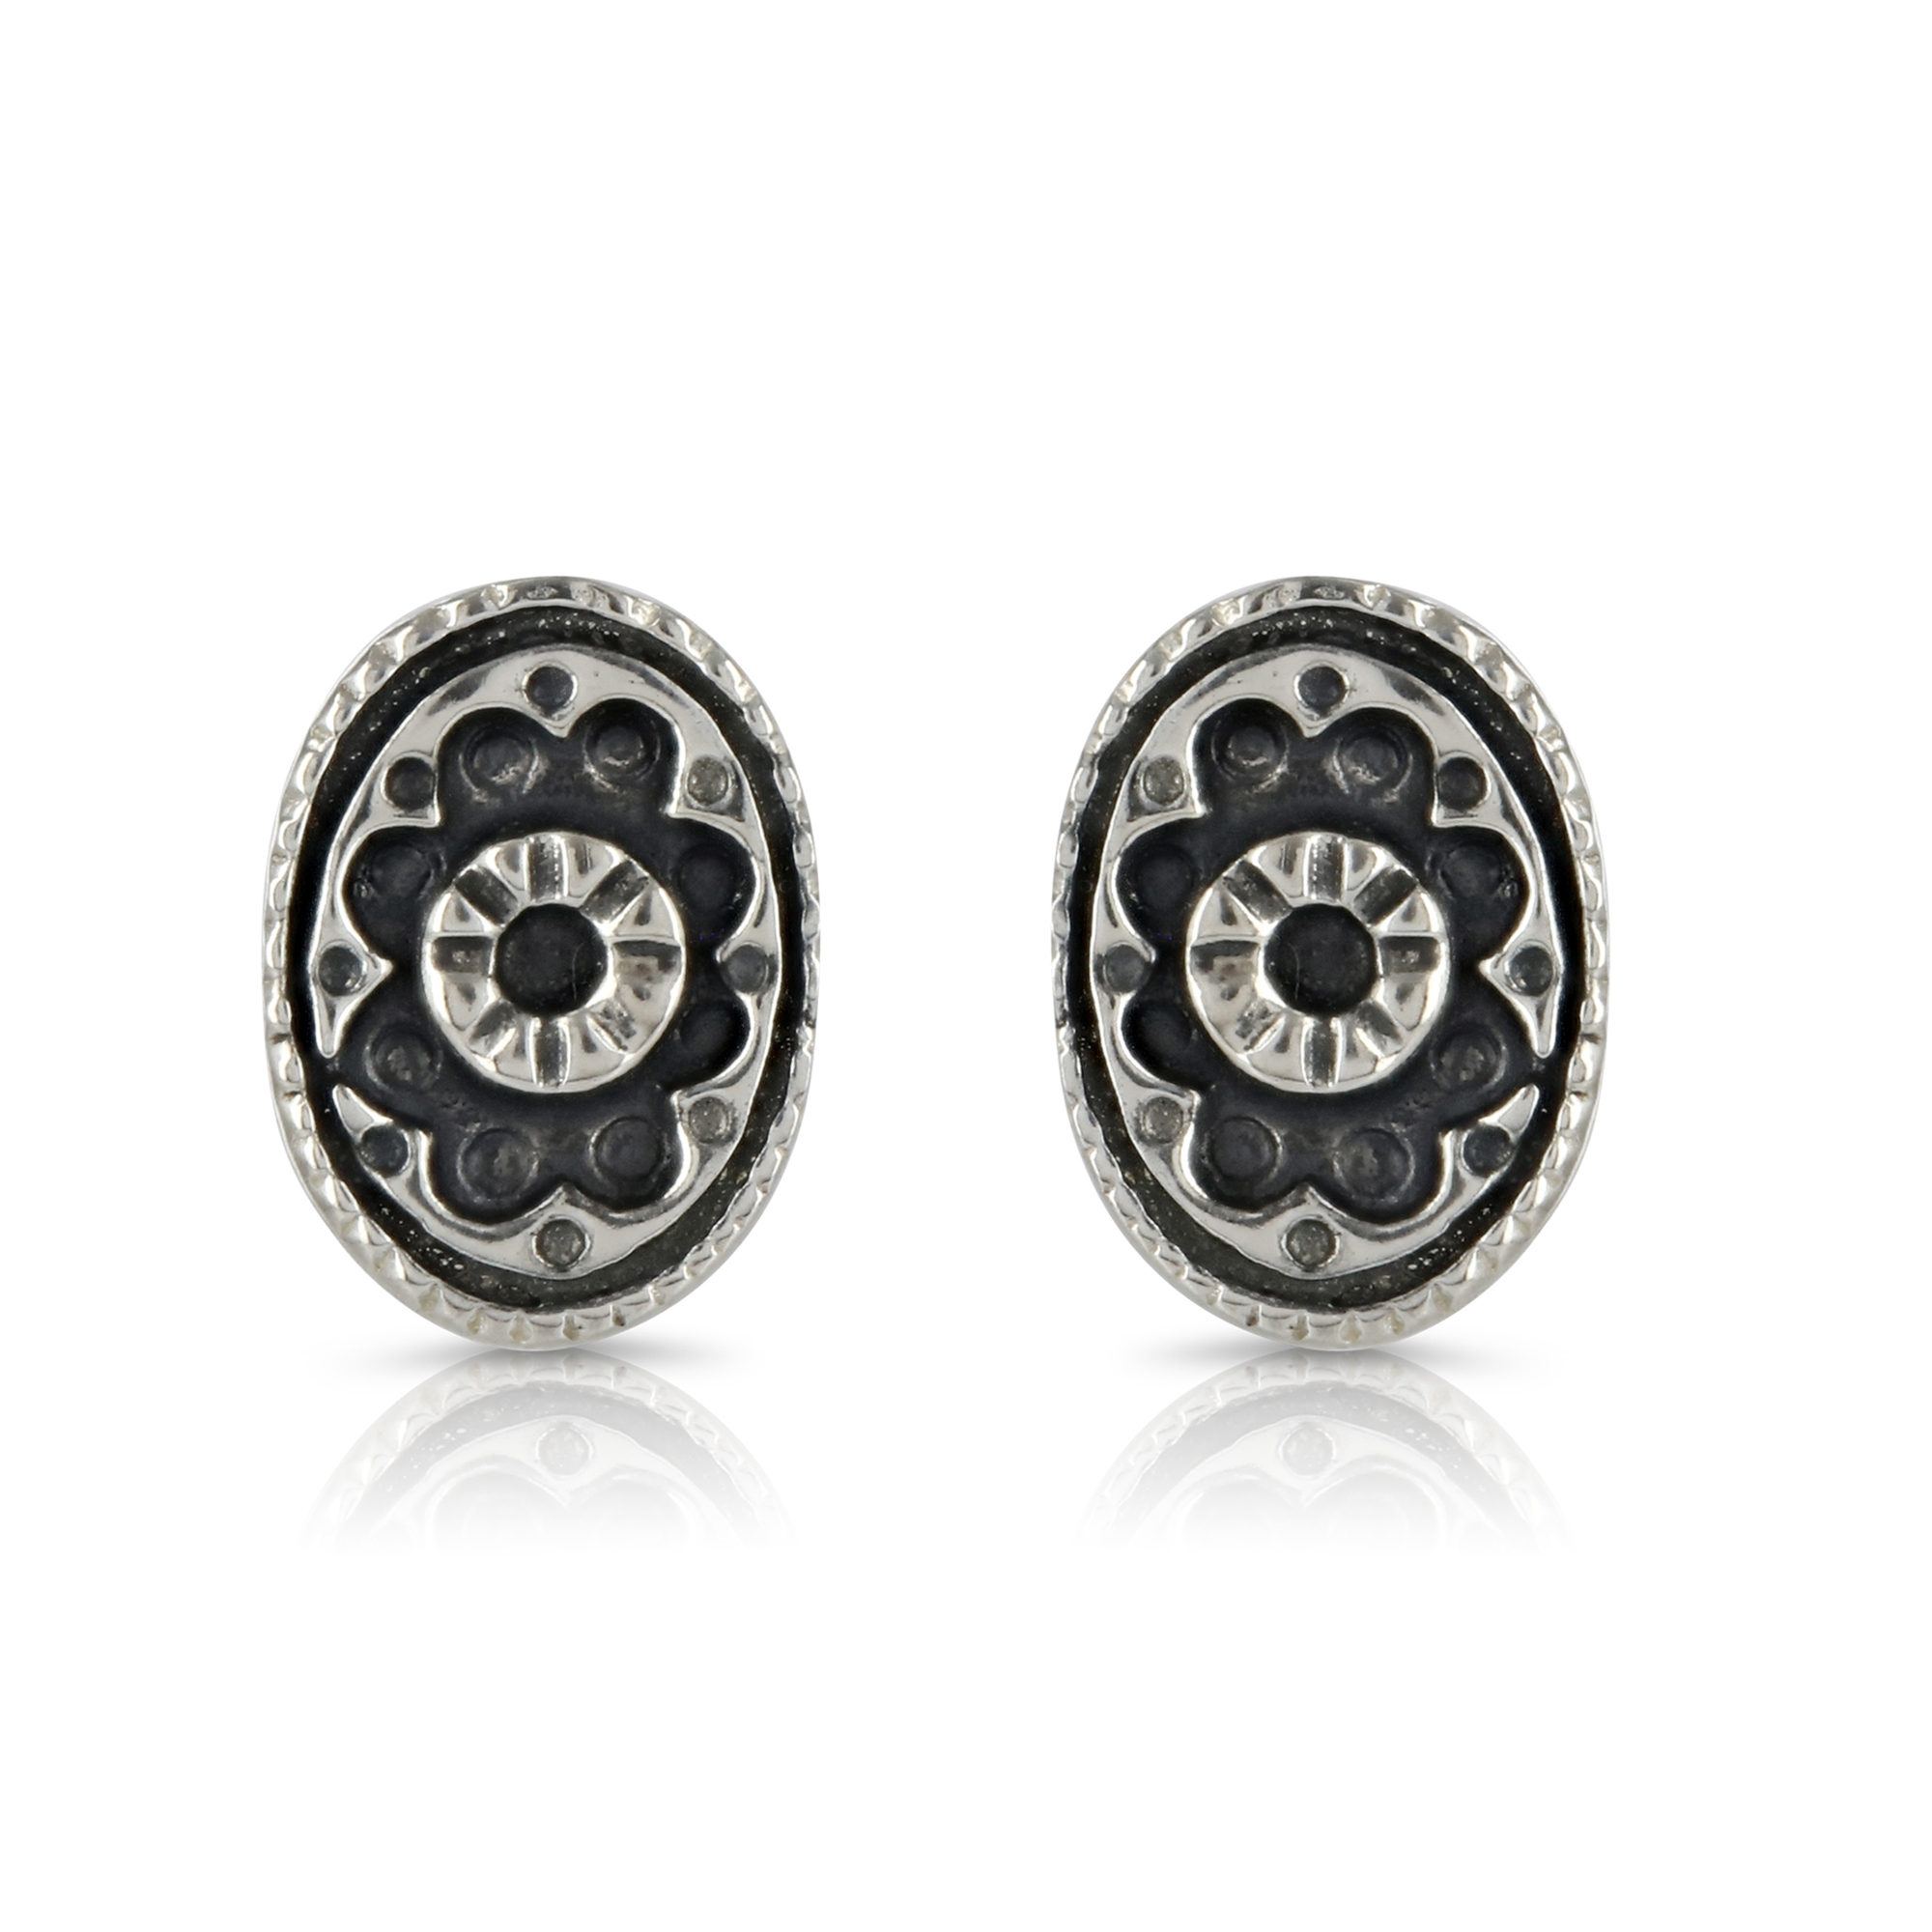 Silver Oval Stud Earrings by Prey Jewellery